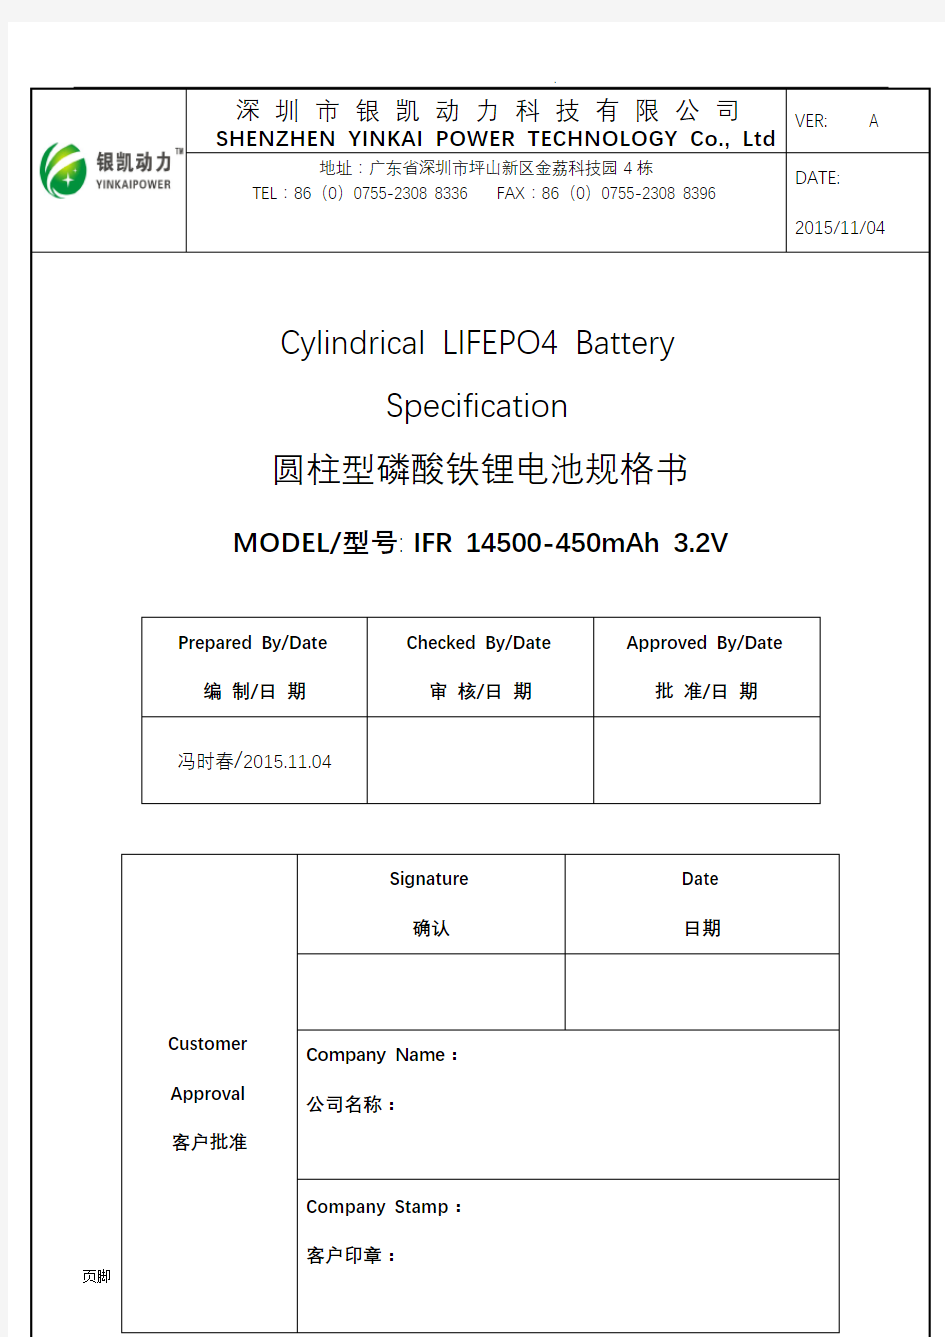 IFR 14500-450mAh 3.2V磷酸铁锂电池规格书超详细版